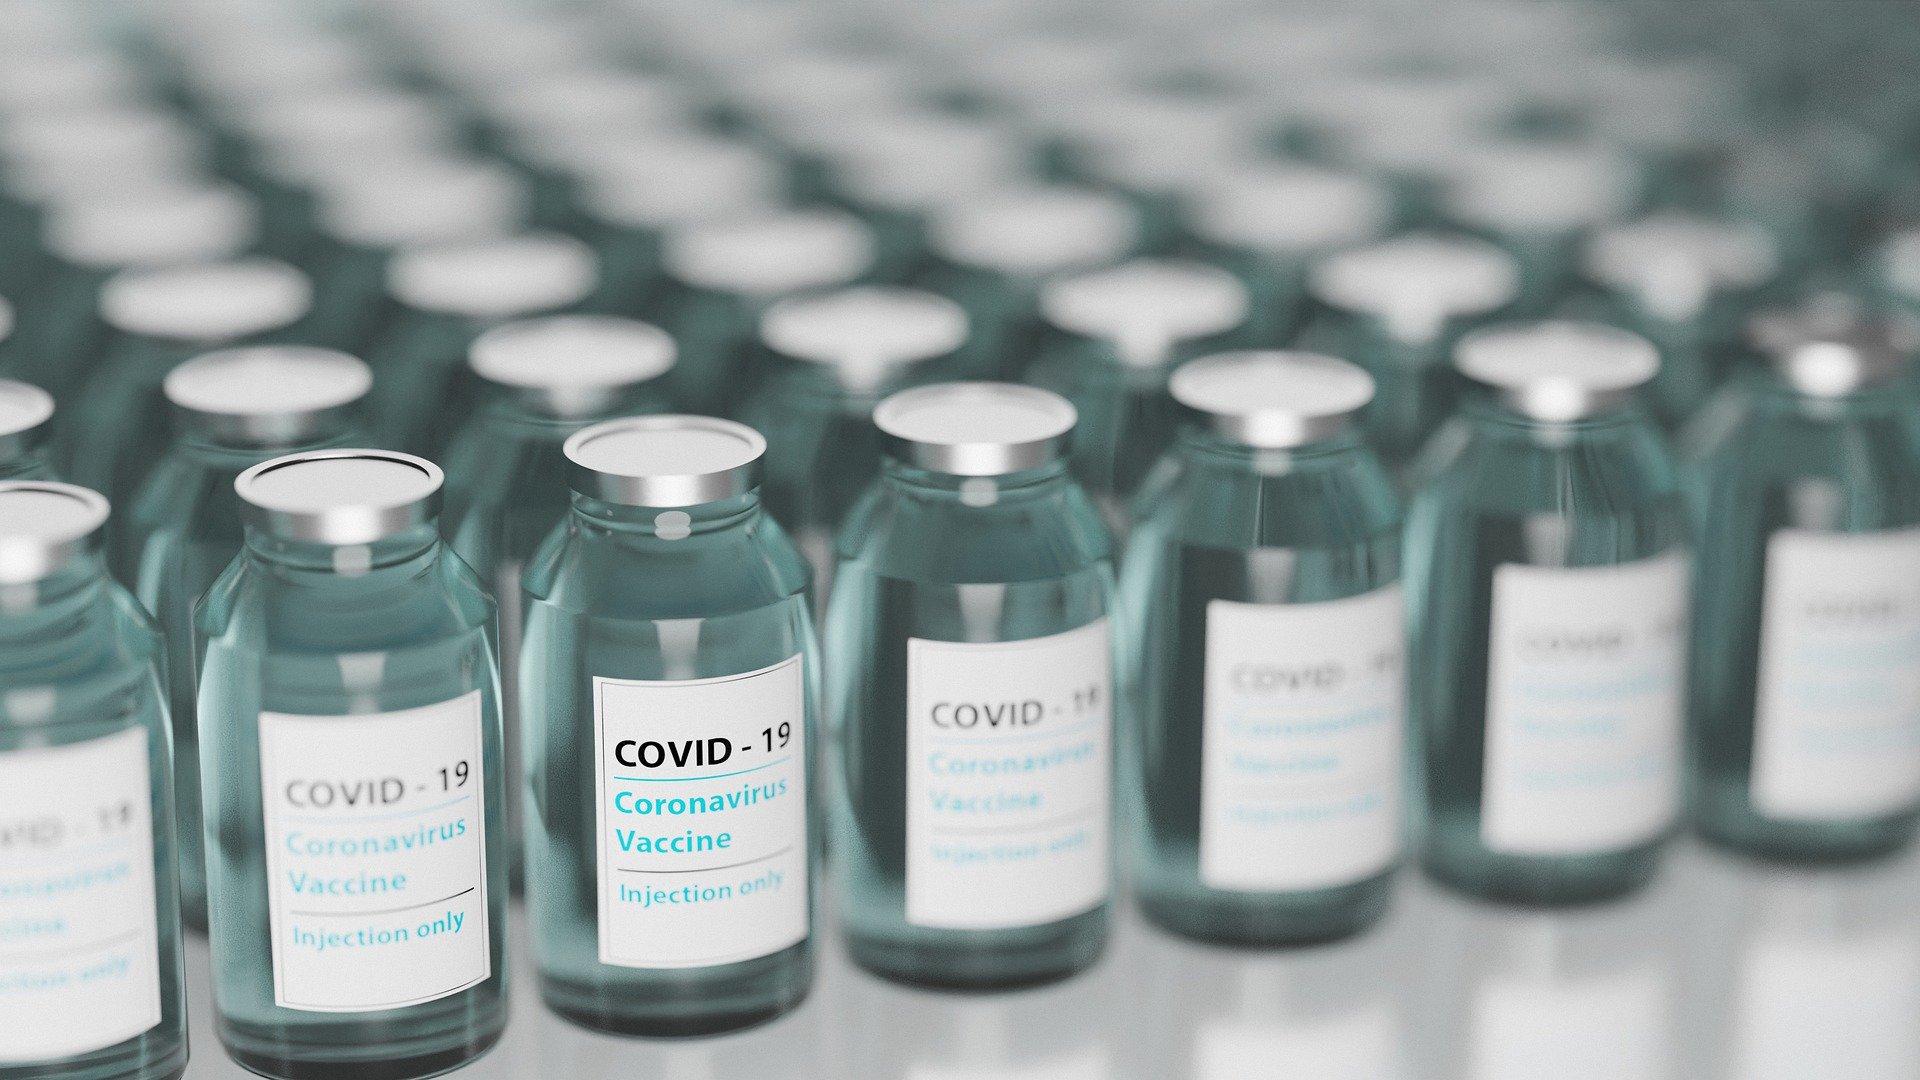 COVID-19 – Arab Saudi sediakan vaksin di apotek secara gratis